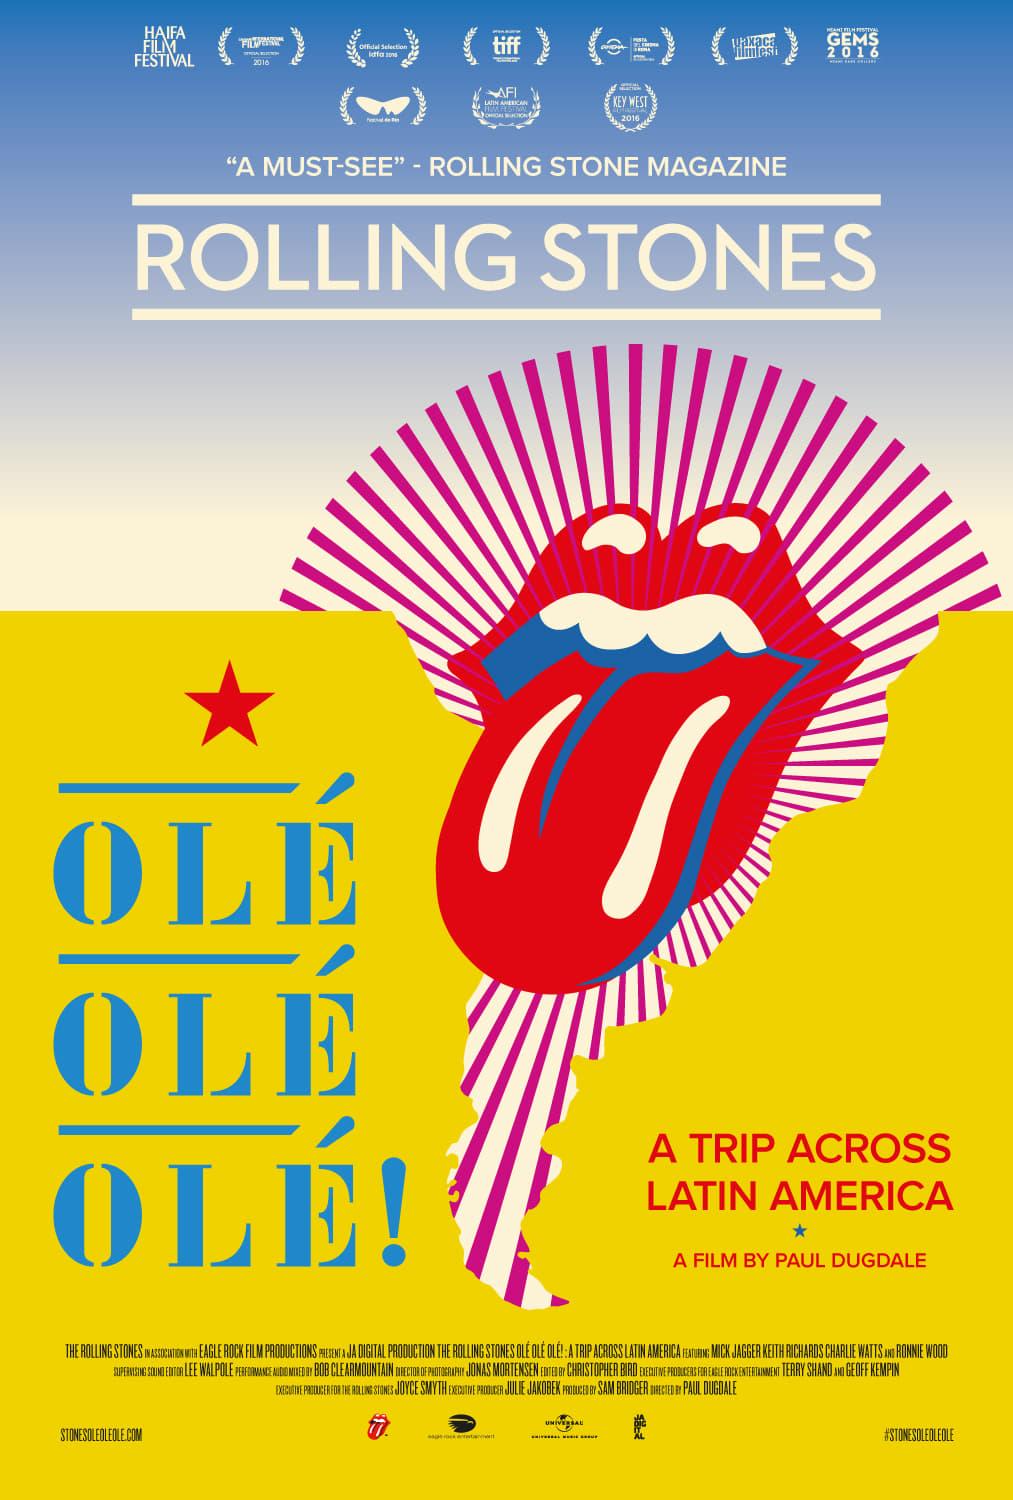 The Rolling Stones: Olé Olé Olé! – A Trip Across Latin America poster